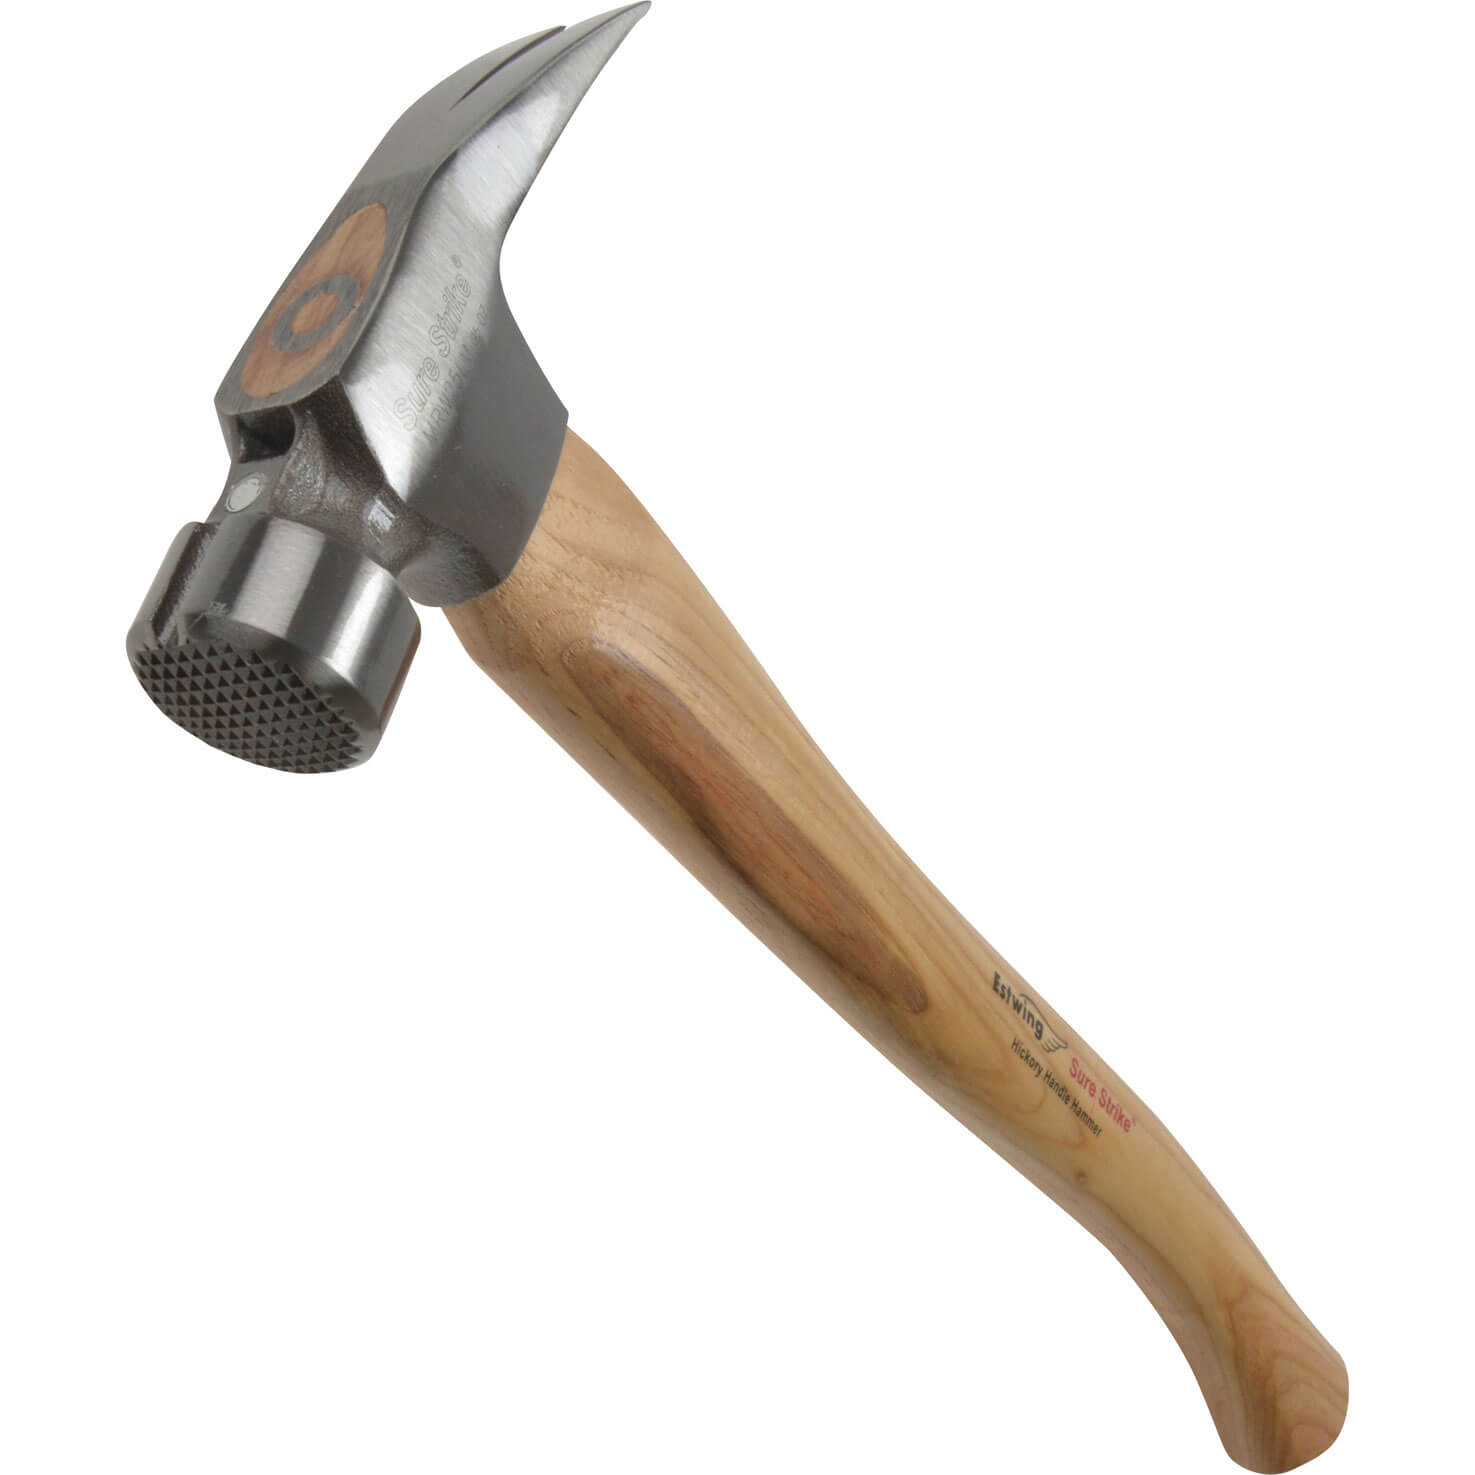 Image of Estwing Surestrike Milled Framing Hammer 700g